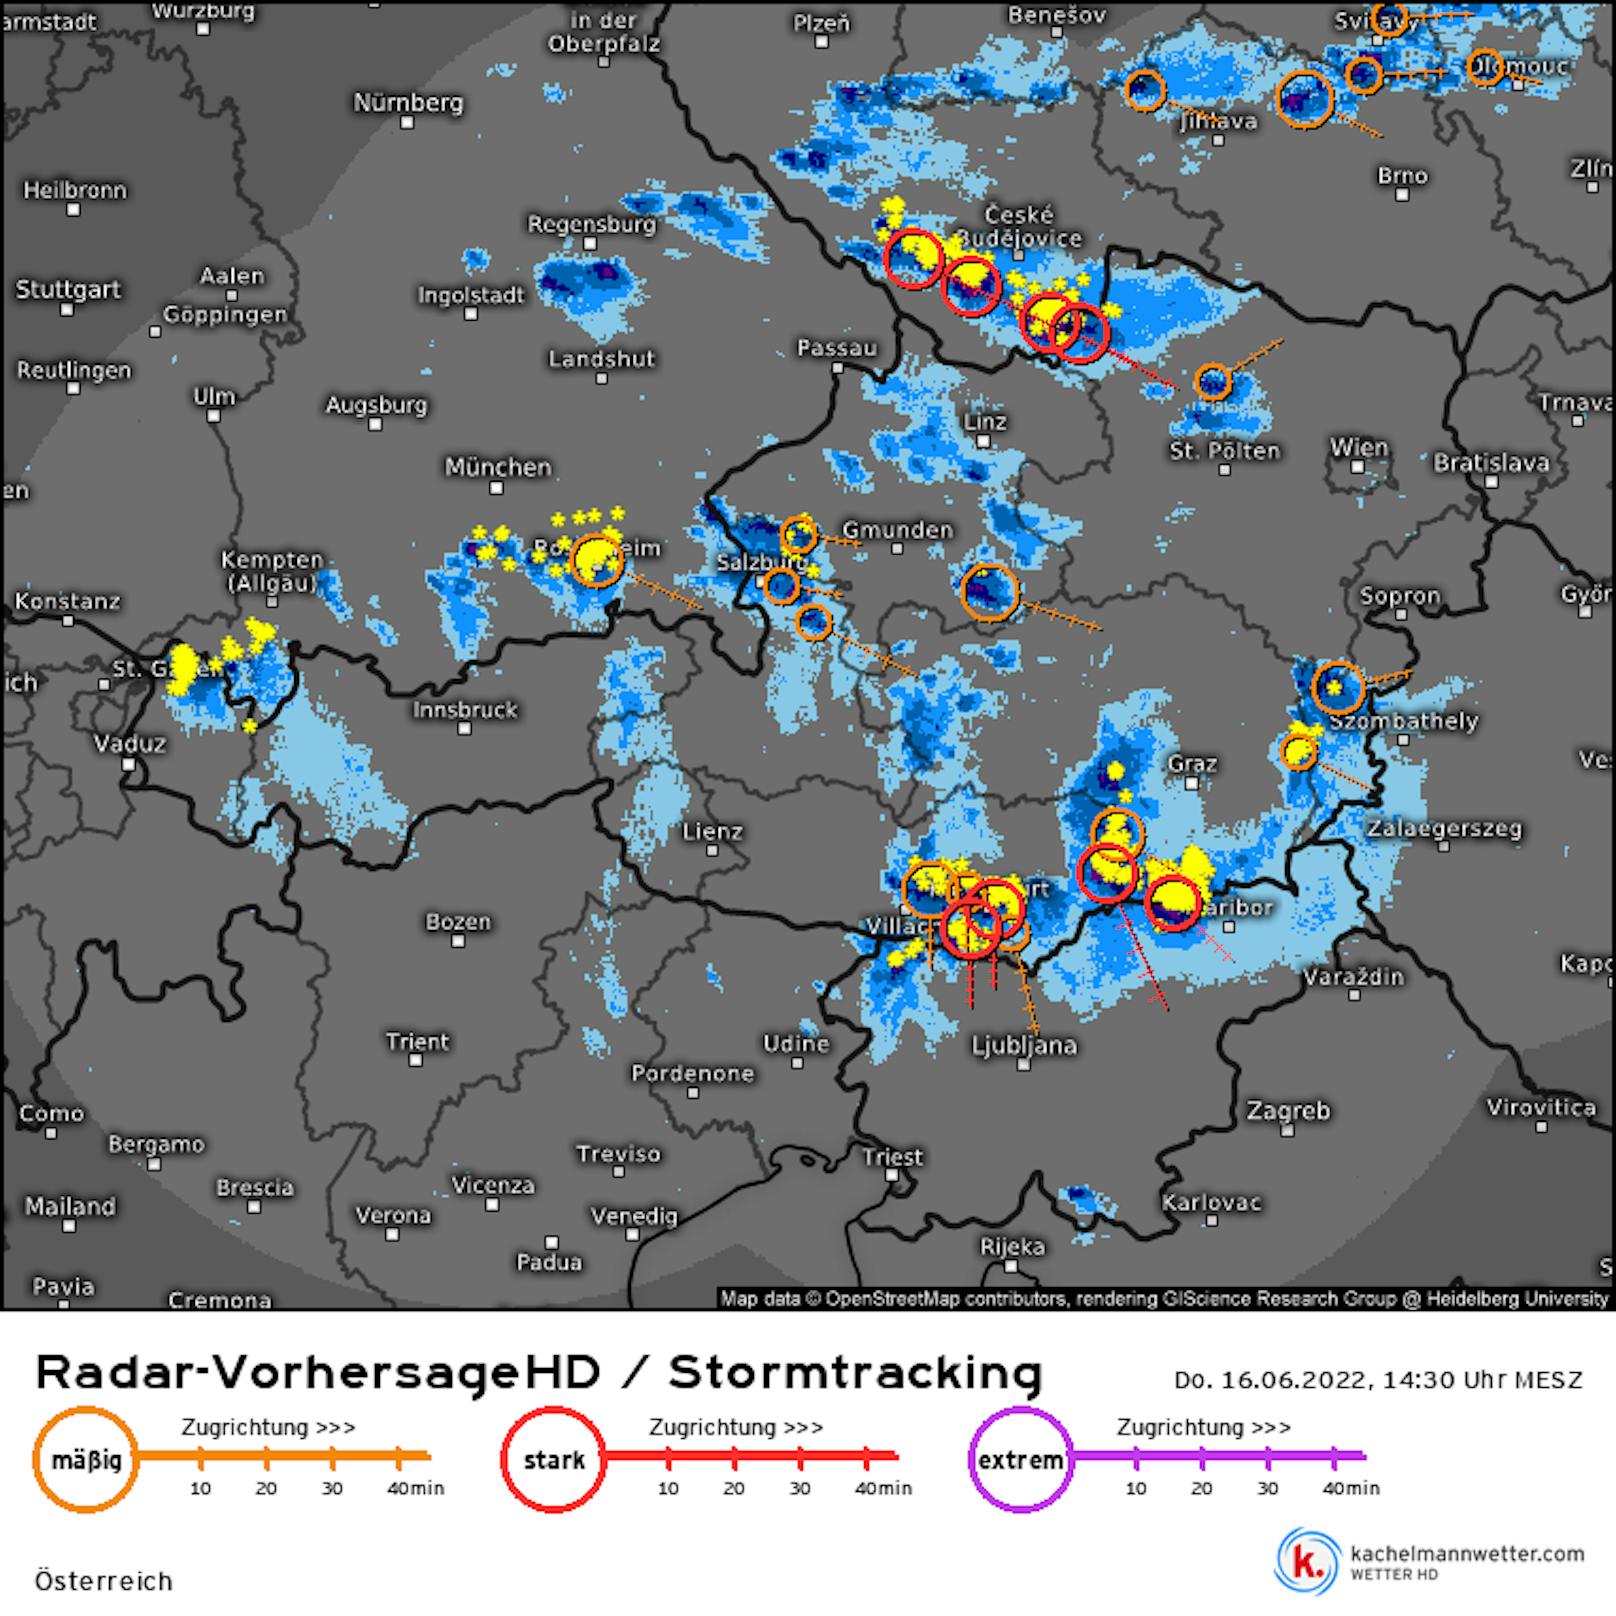 Die Gewitterzellen aus Tschechien bewegen sich schnell Richtung Wien.